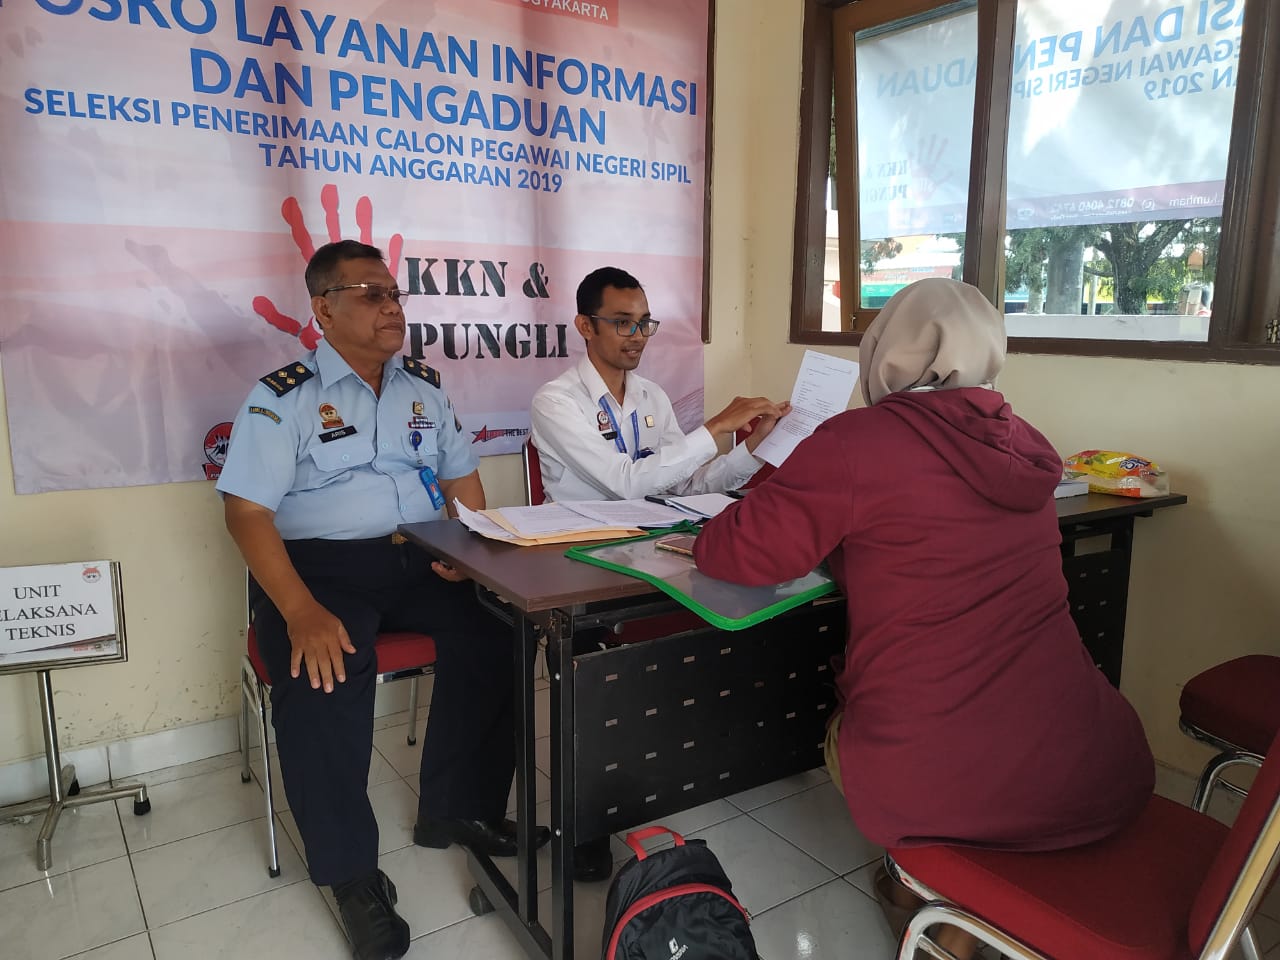 Wujudkan Rekruitmen yang Bersih dan Transpran, Kanwil Kemenkumham D.I Yogyakarta Fasilitasi Pos Layanan Informasi dan Pengaduan CPNS